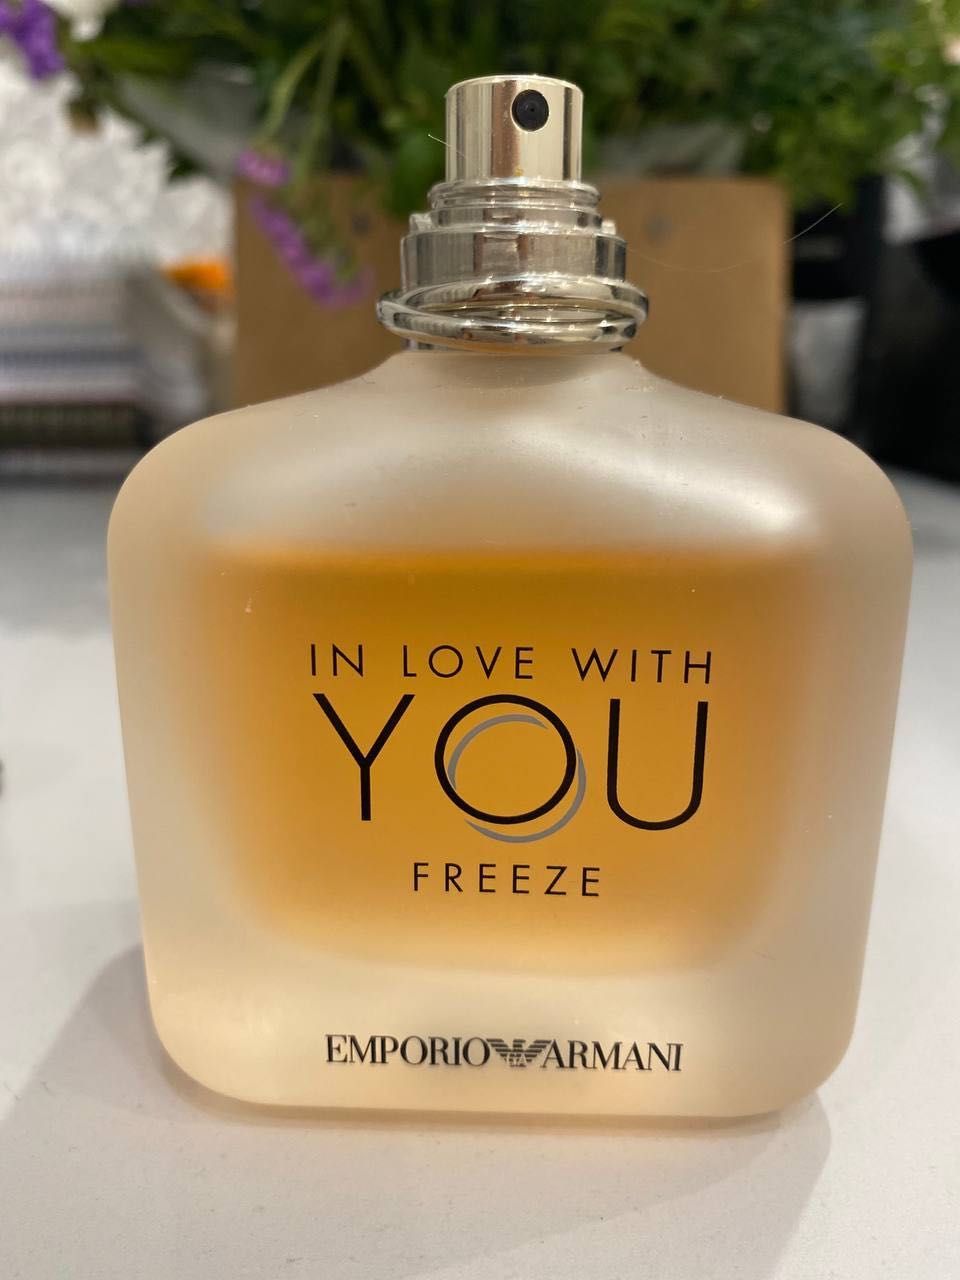 Giorgio Armani Emporio Armani In Love with You Freeze